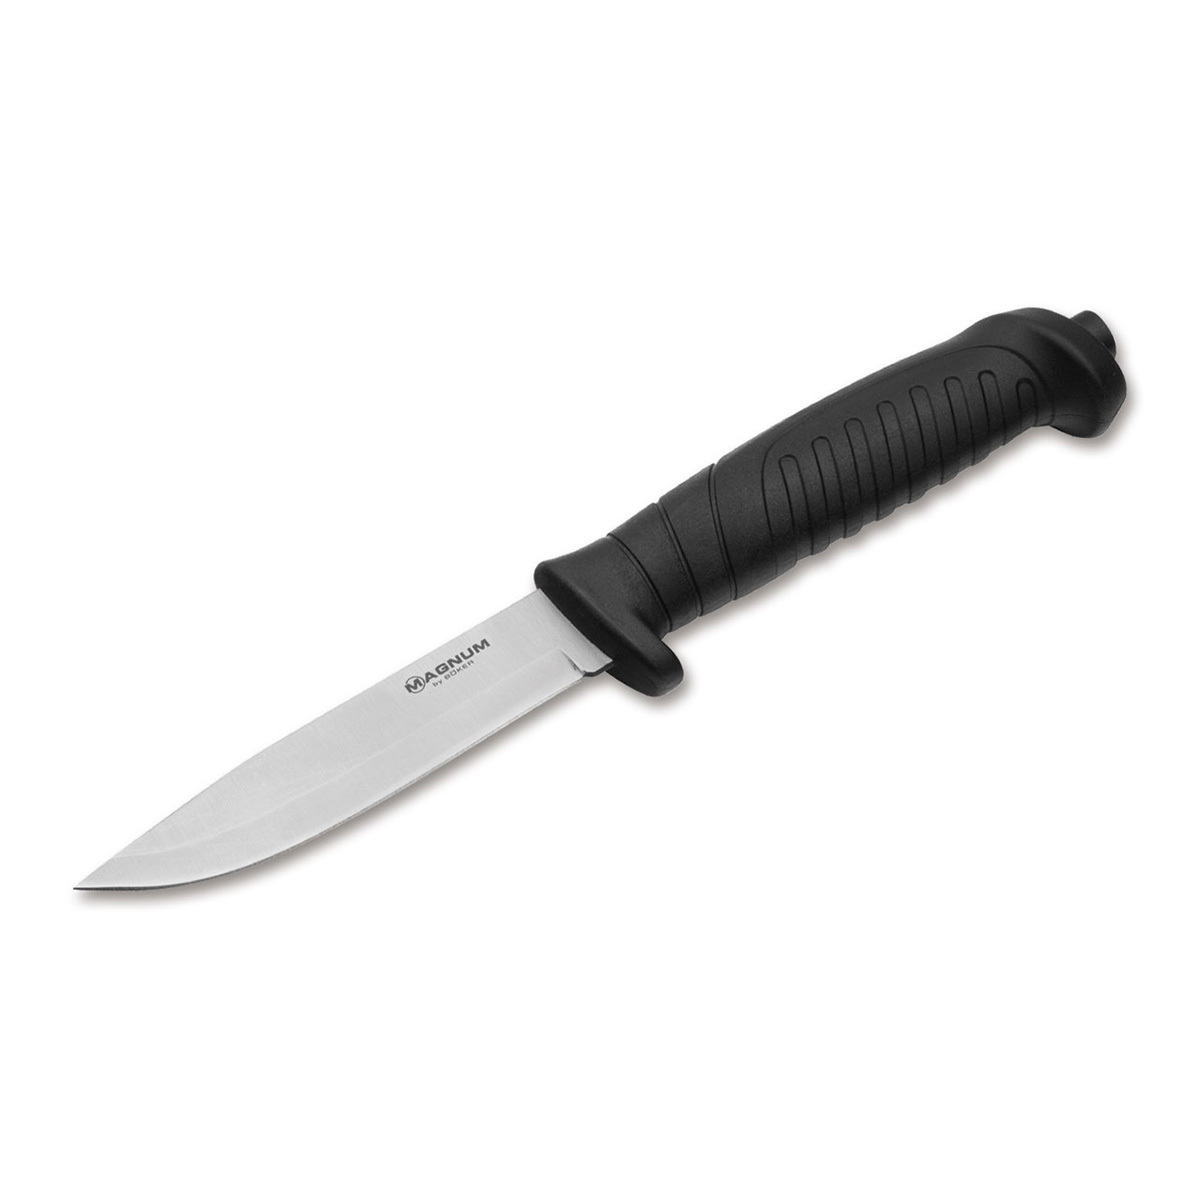 Нож с фиксированным клинком Boker Knivgar Black, сталь 420A, рукоять пластик